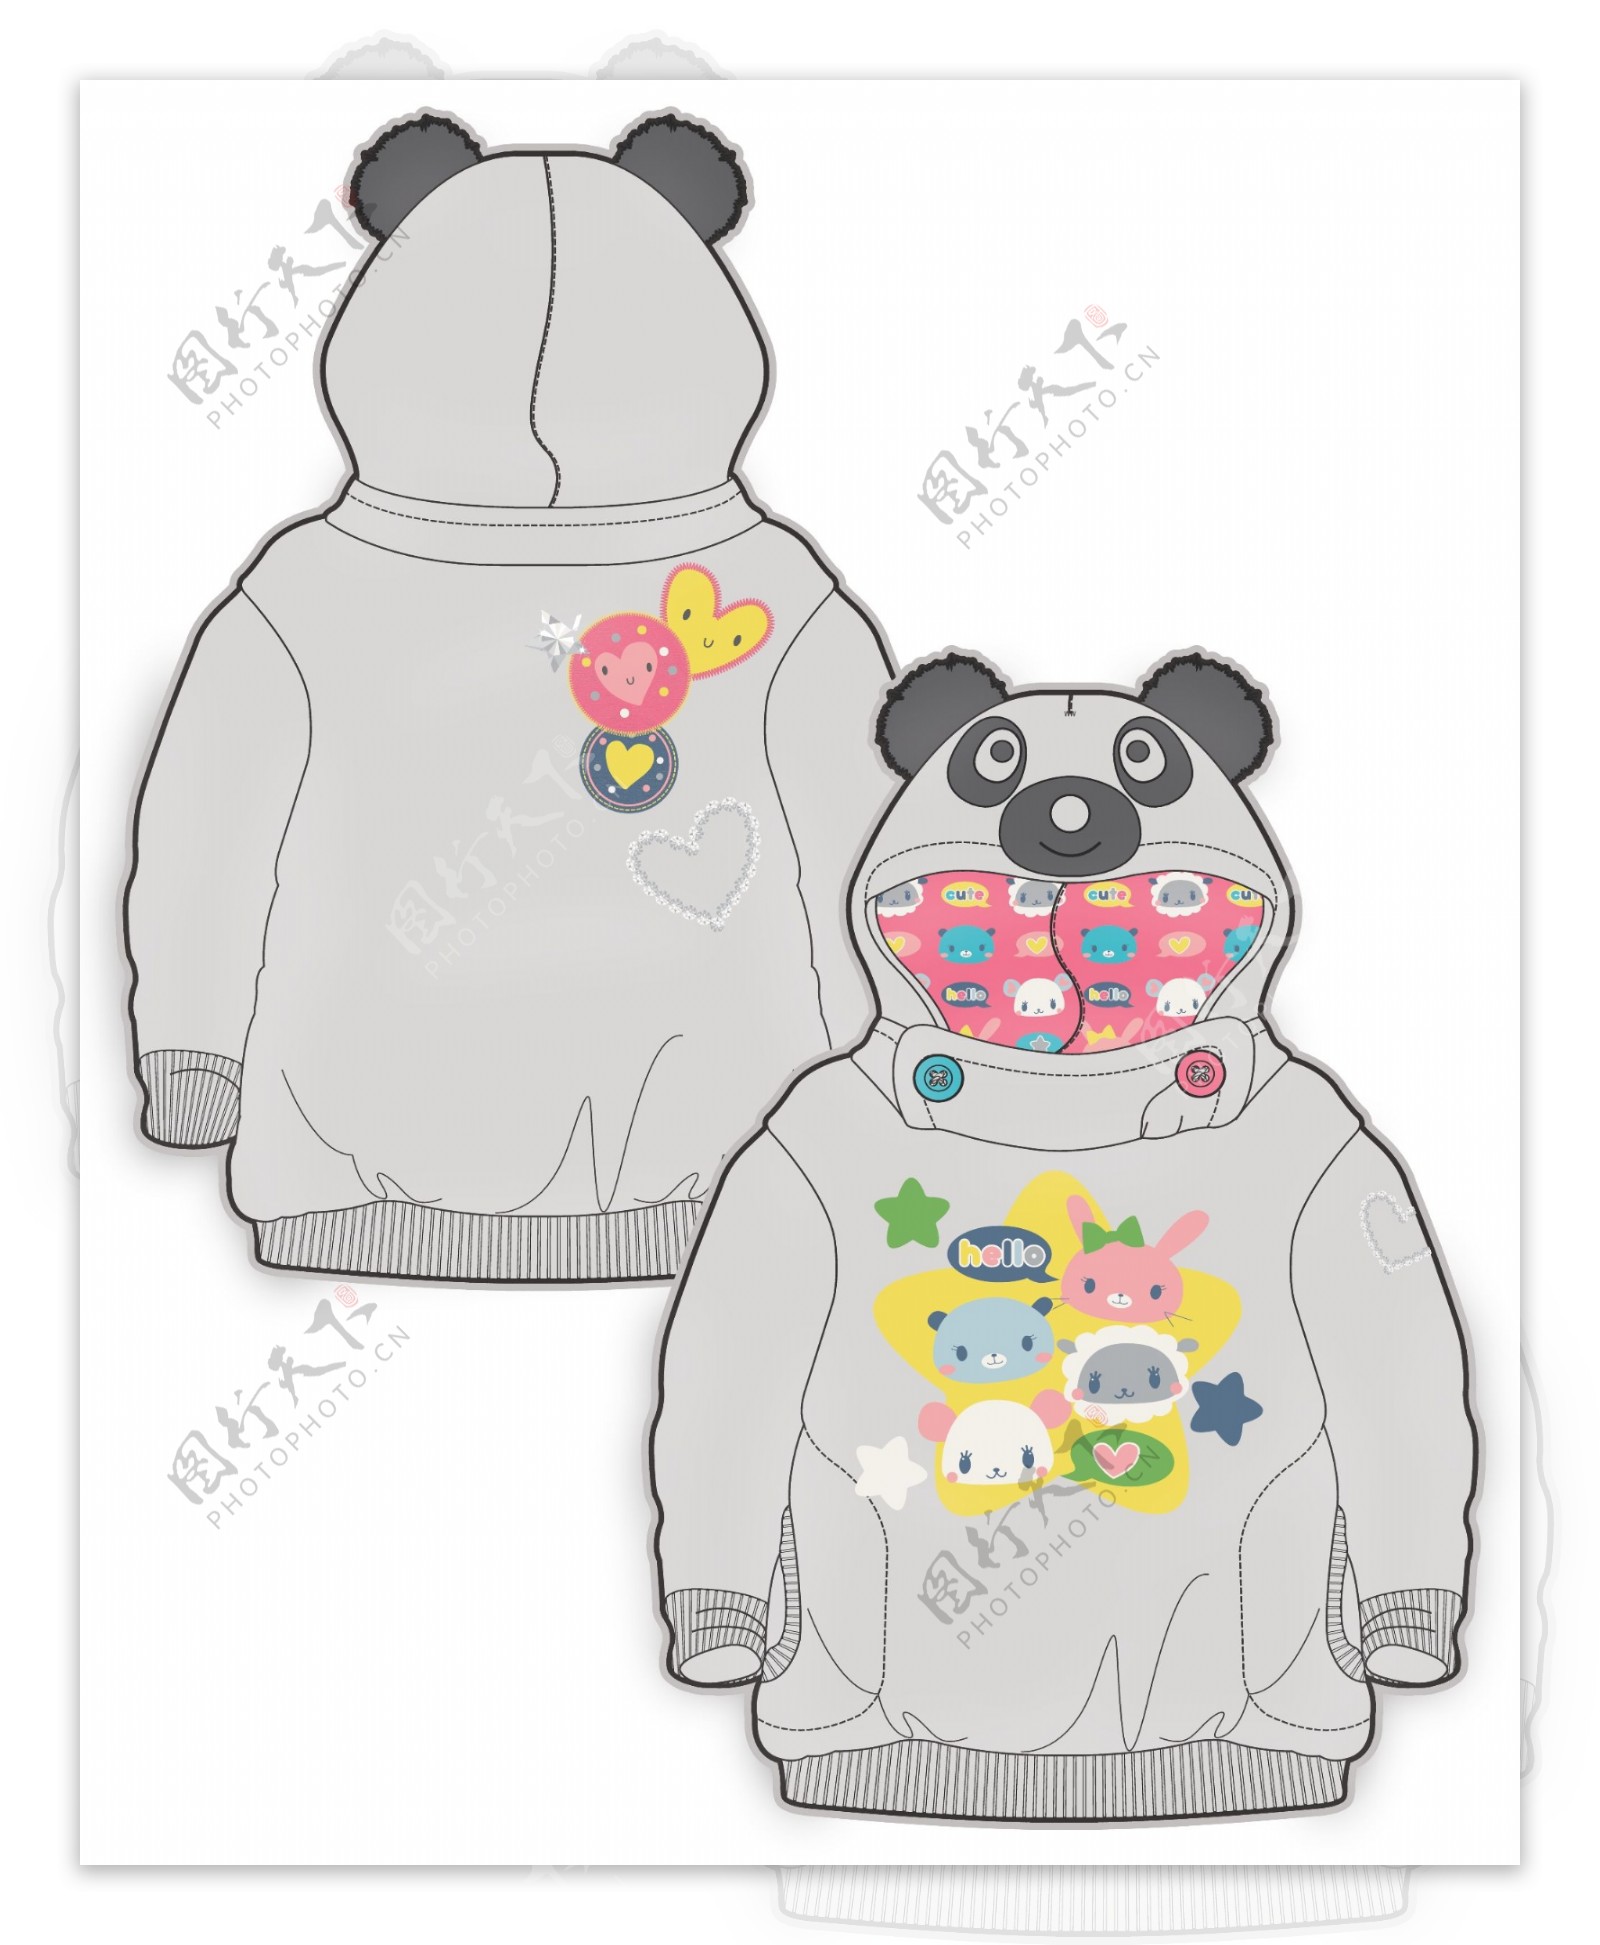 灰色熊猫卫衣女宝宝服装设计彩色原稿矢量